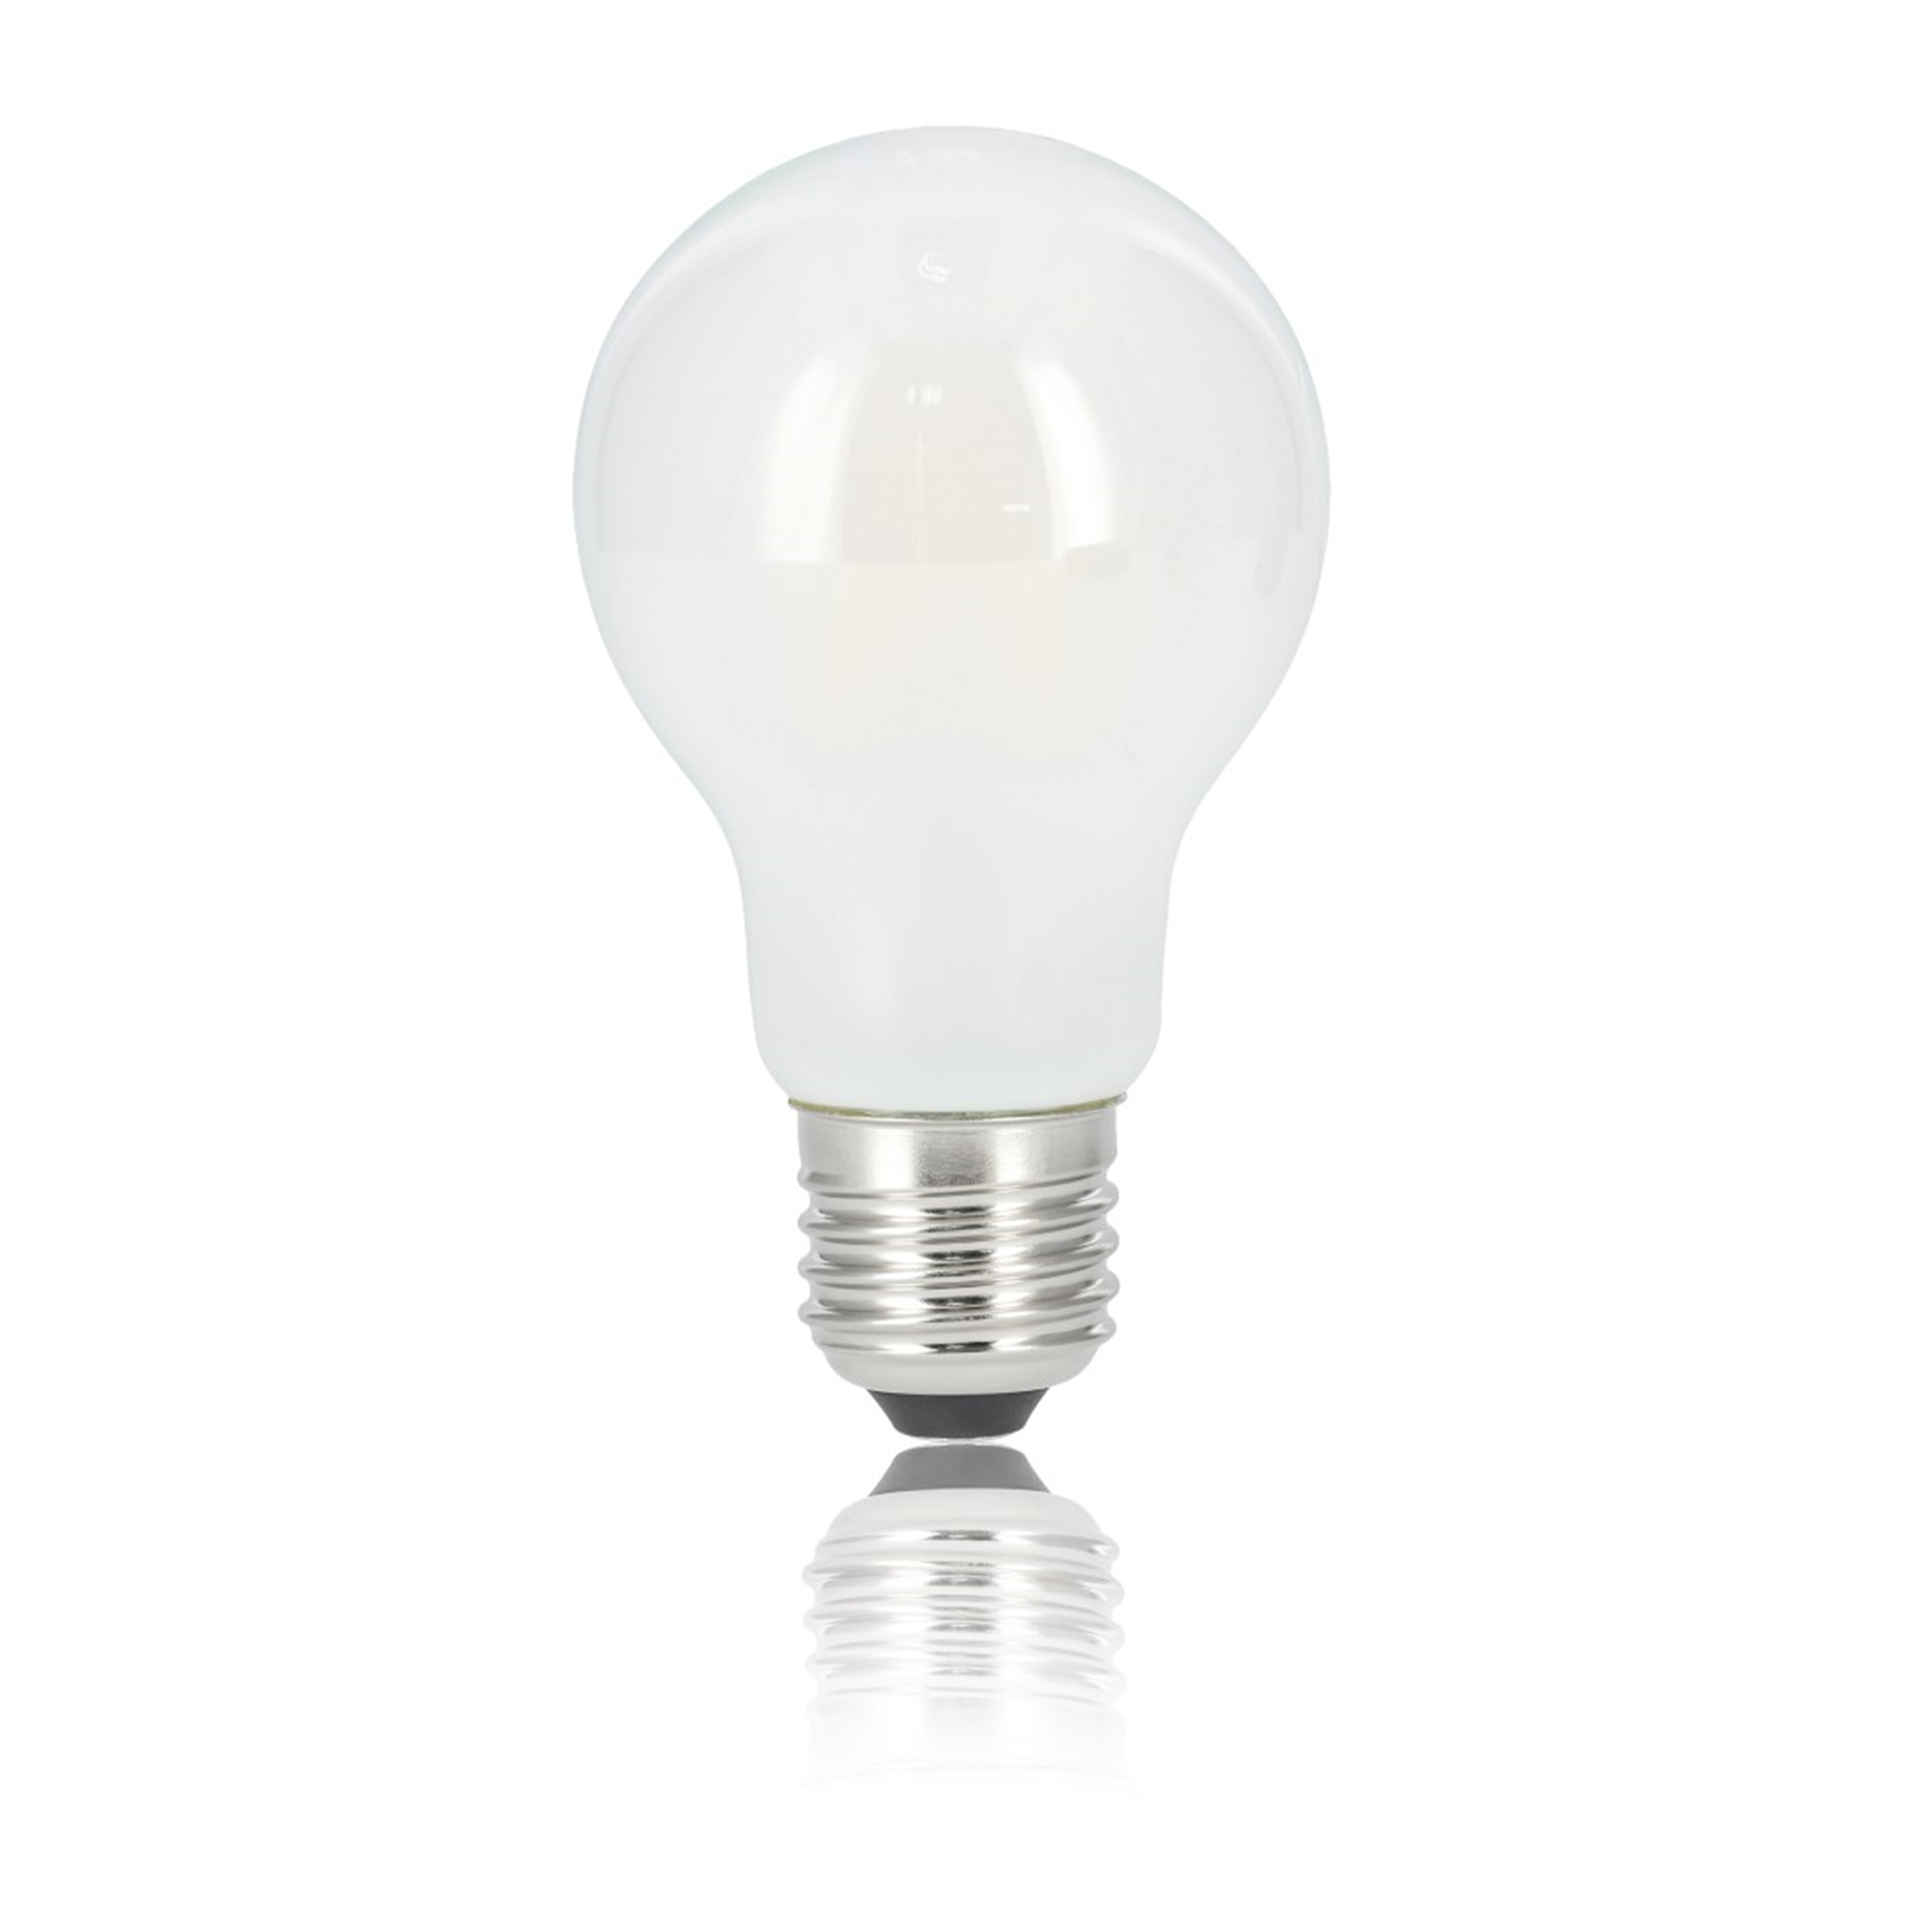 XAVAX E27, 806lm Warmweiß E27 ersetzt LED-Lampe 60W